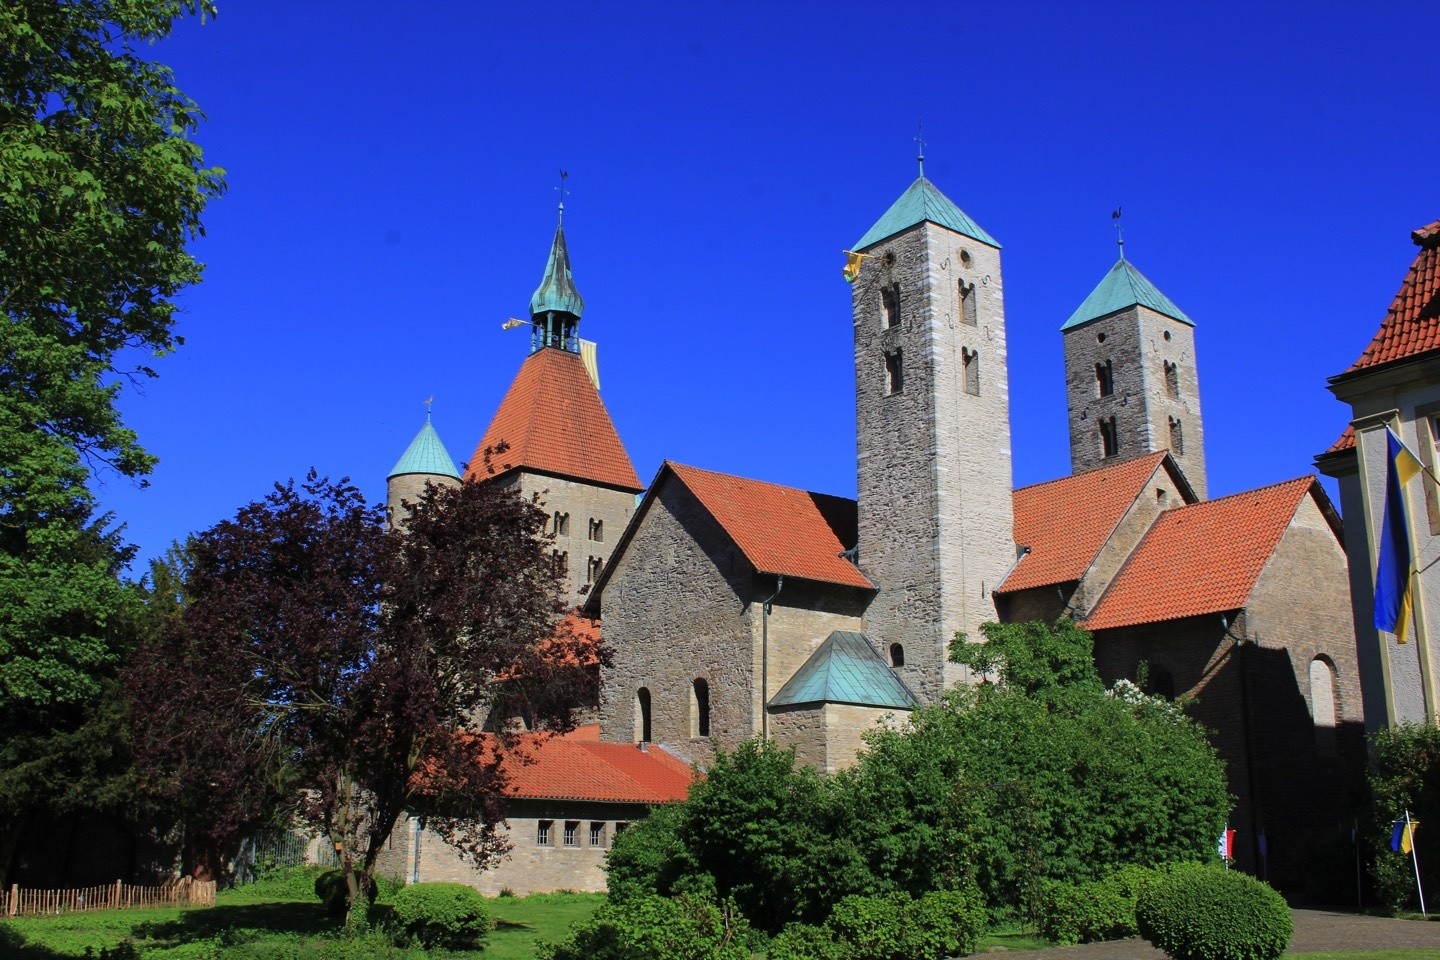 Stiftskirche,St Bonifatius,Freckenhorst,Rundgang,Führung,